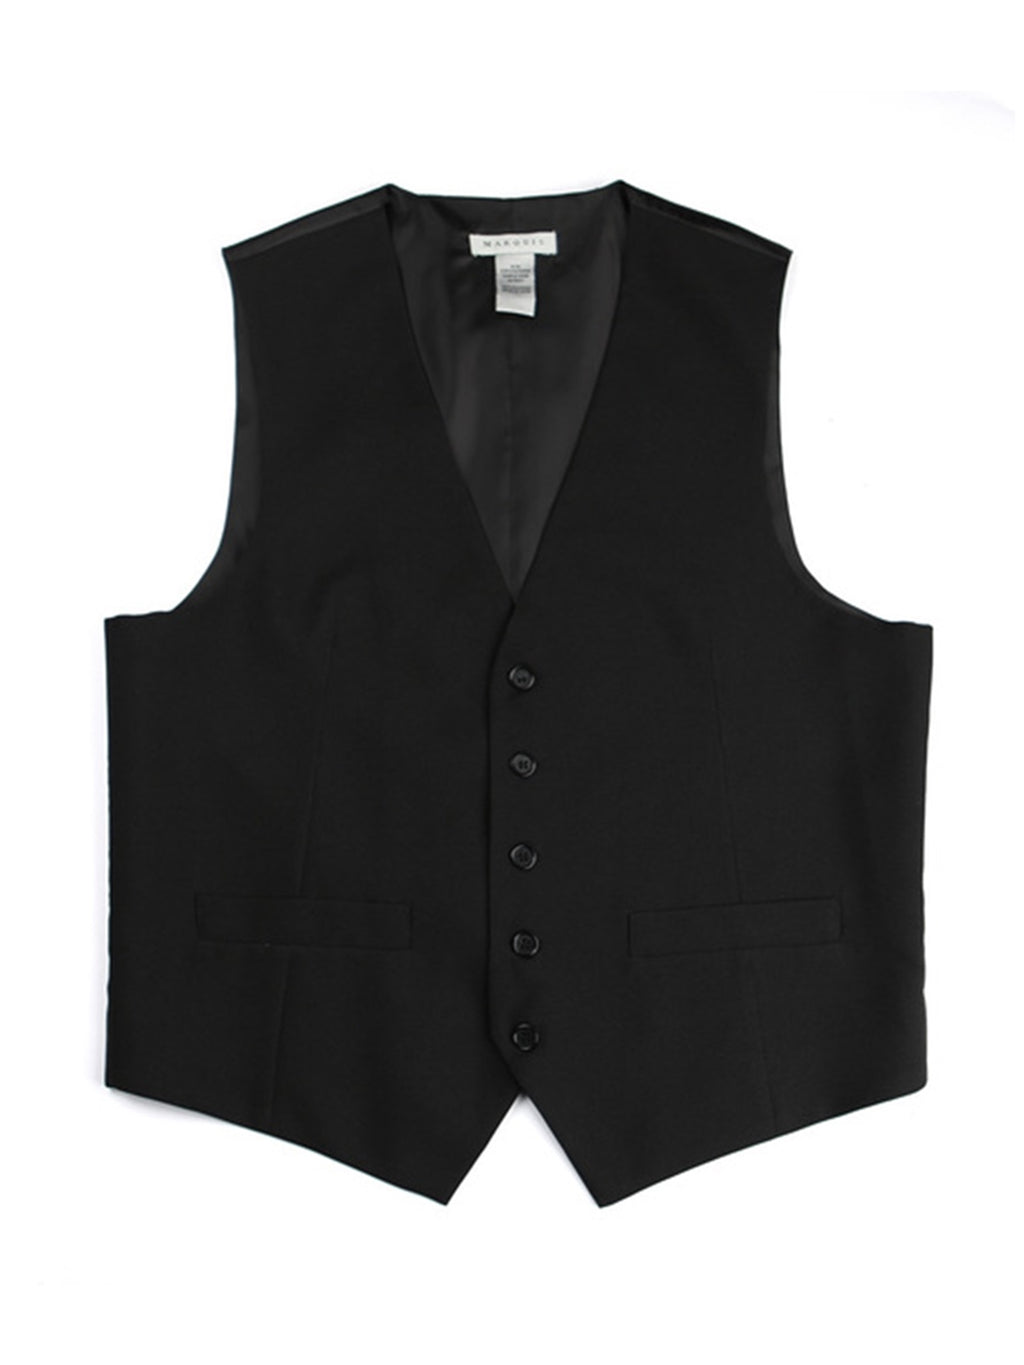 Marquis Men's Streamlined 5 Button Formal Suit Vest Vests Marquis Black XS 